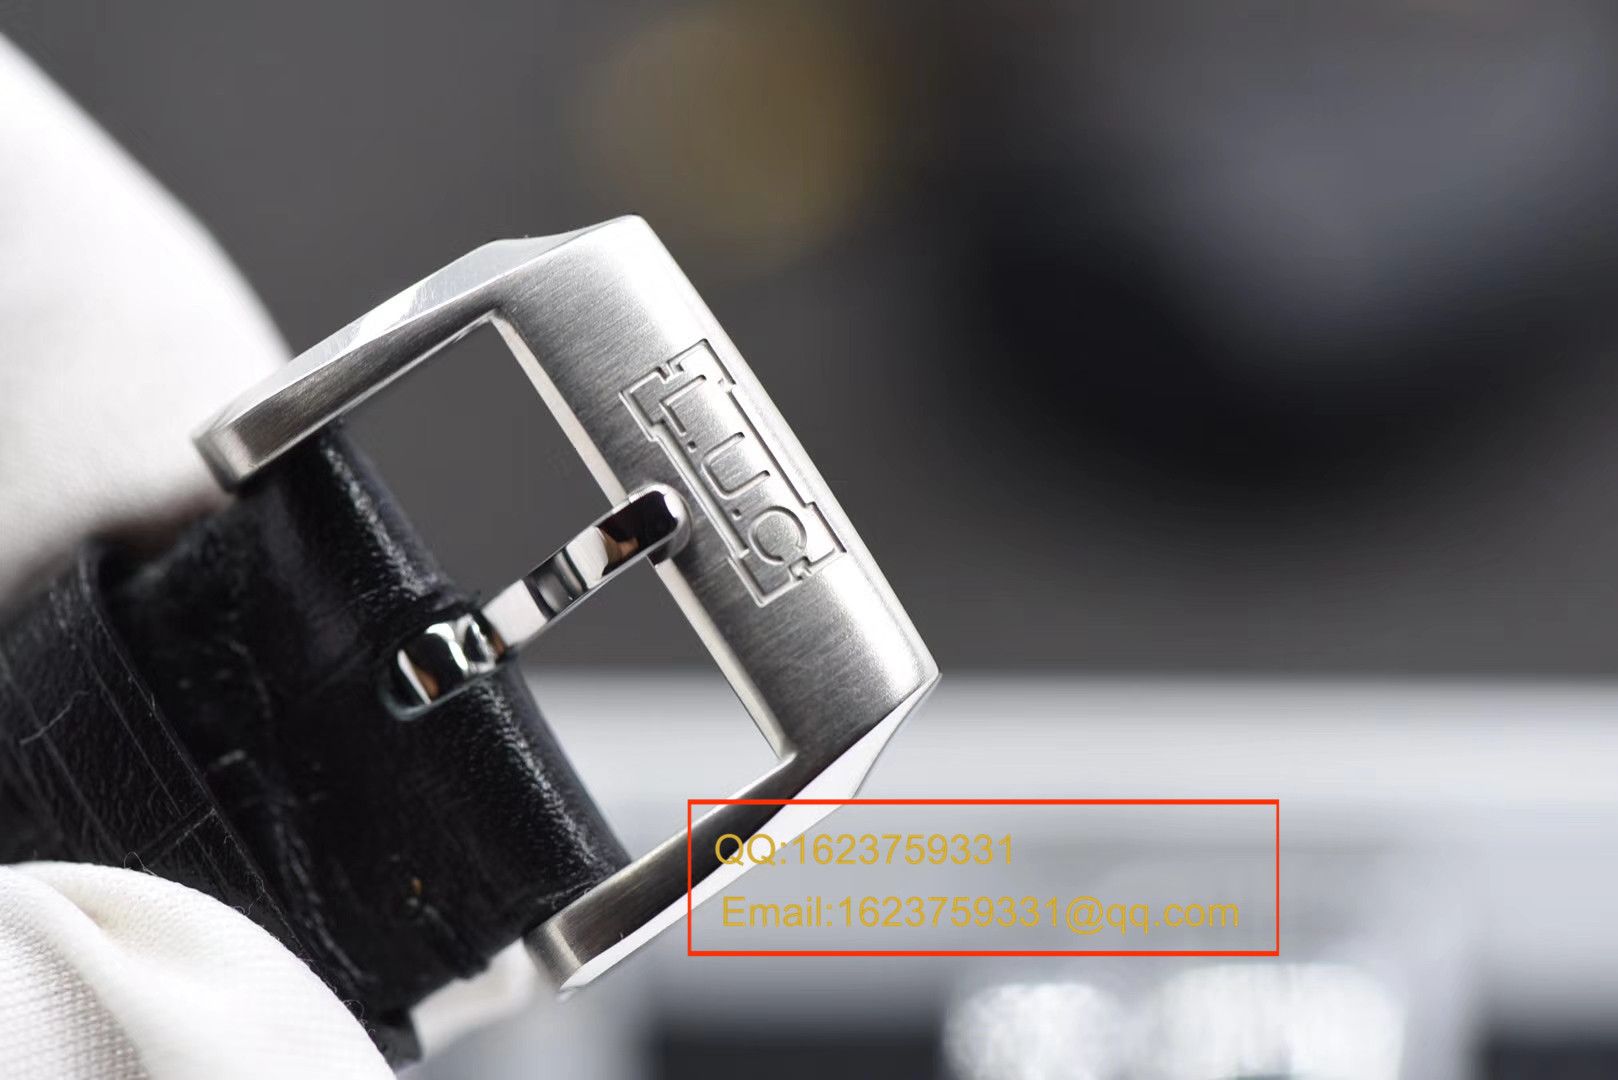 【视频评测FK一比一超A高仿手表】萧邦L.U.C系列168544-3001腕表 / XB016